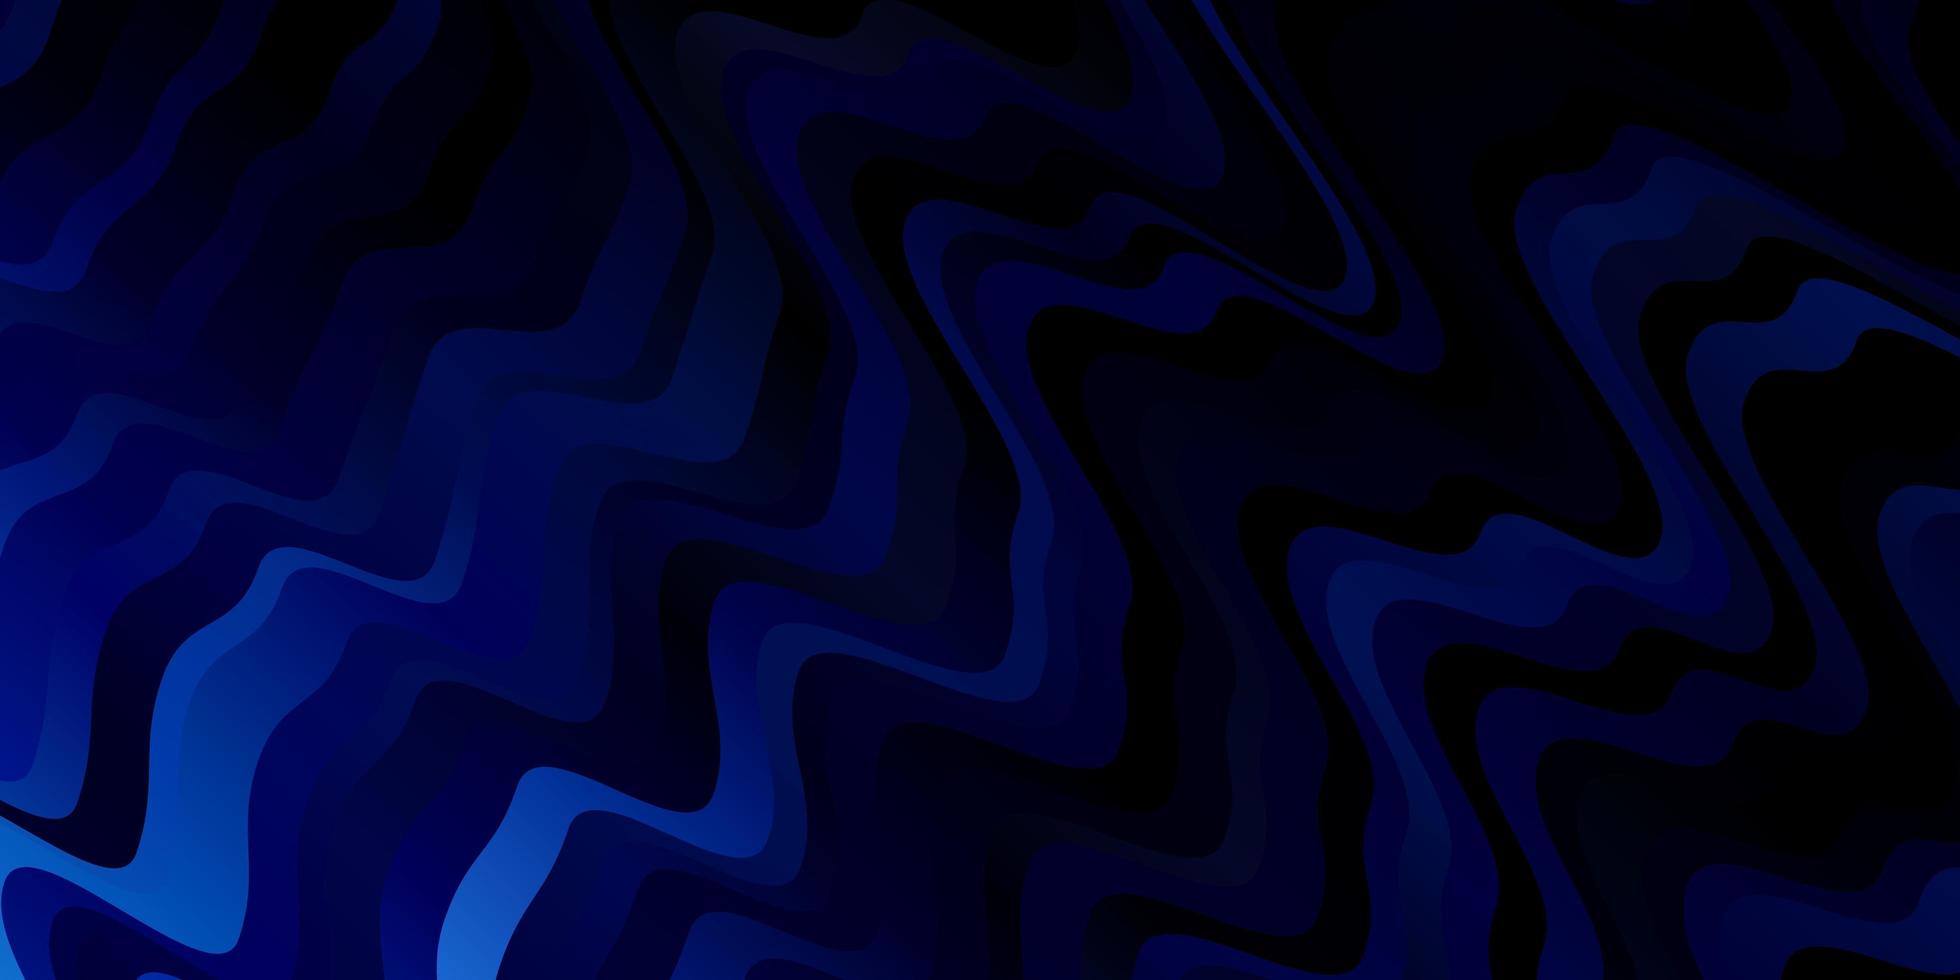 Telón de fondo de vector azul oscuro con curvas.